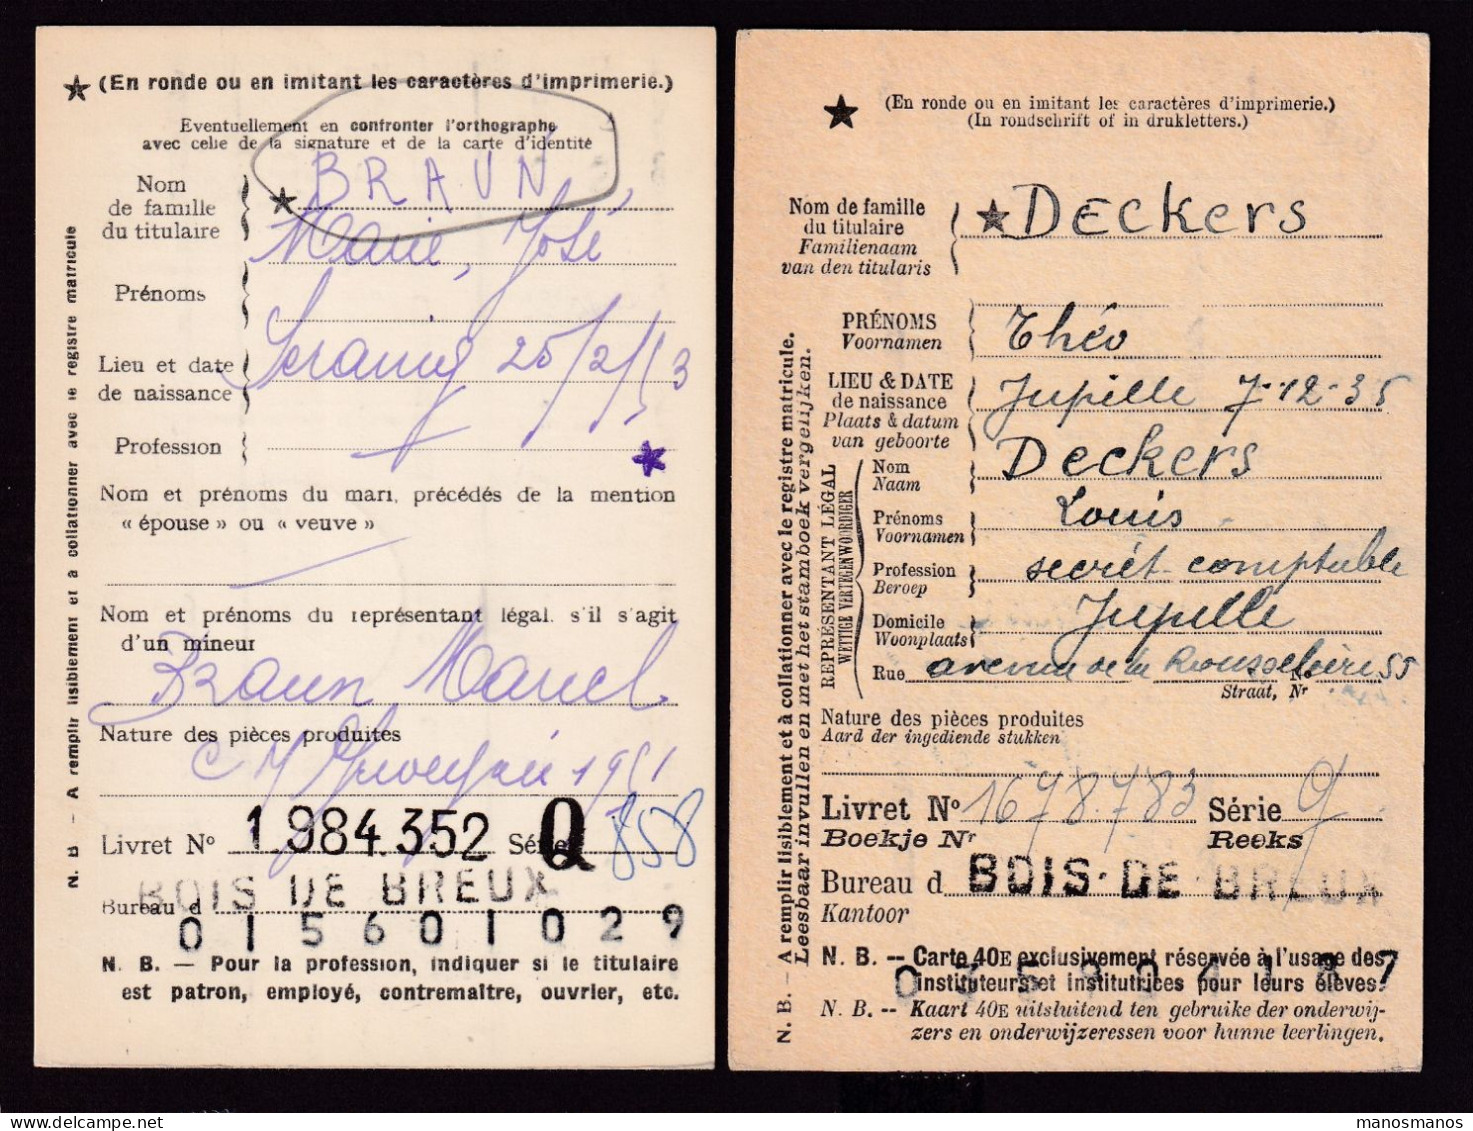 DDFF 554 -- BOIS DE BREUX - 2 X Carte De Caisse D'Epargne Postale/Postspaarkaskaart 1947/1953 - Grande Griffe - Portofreiheit